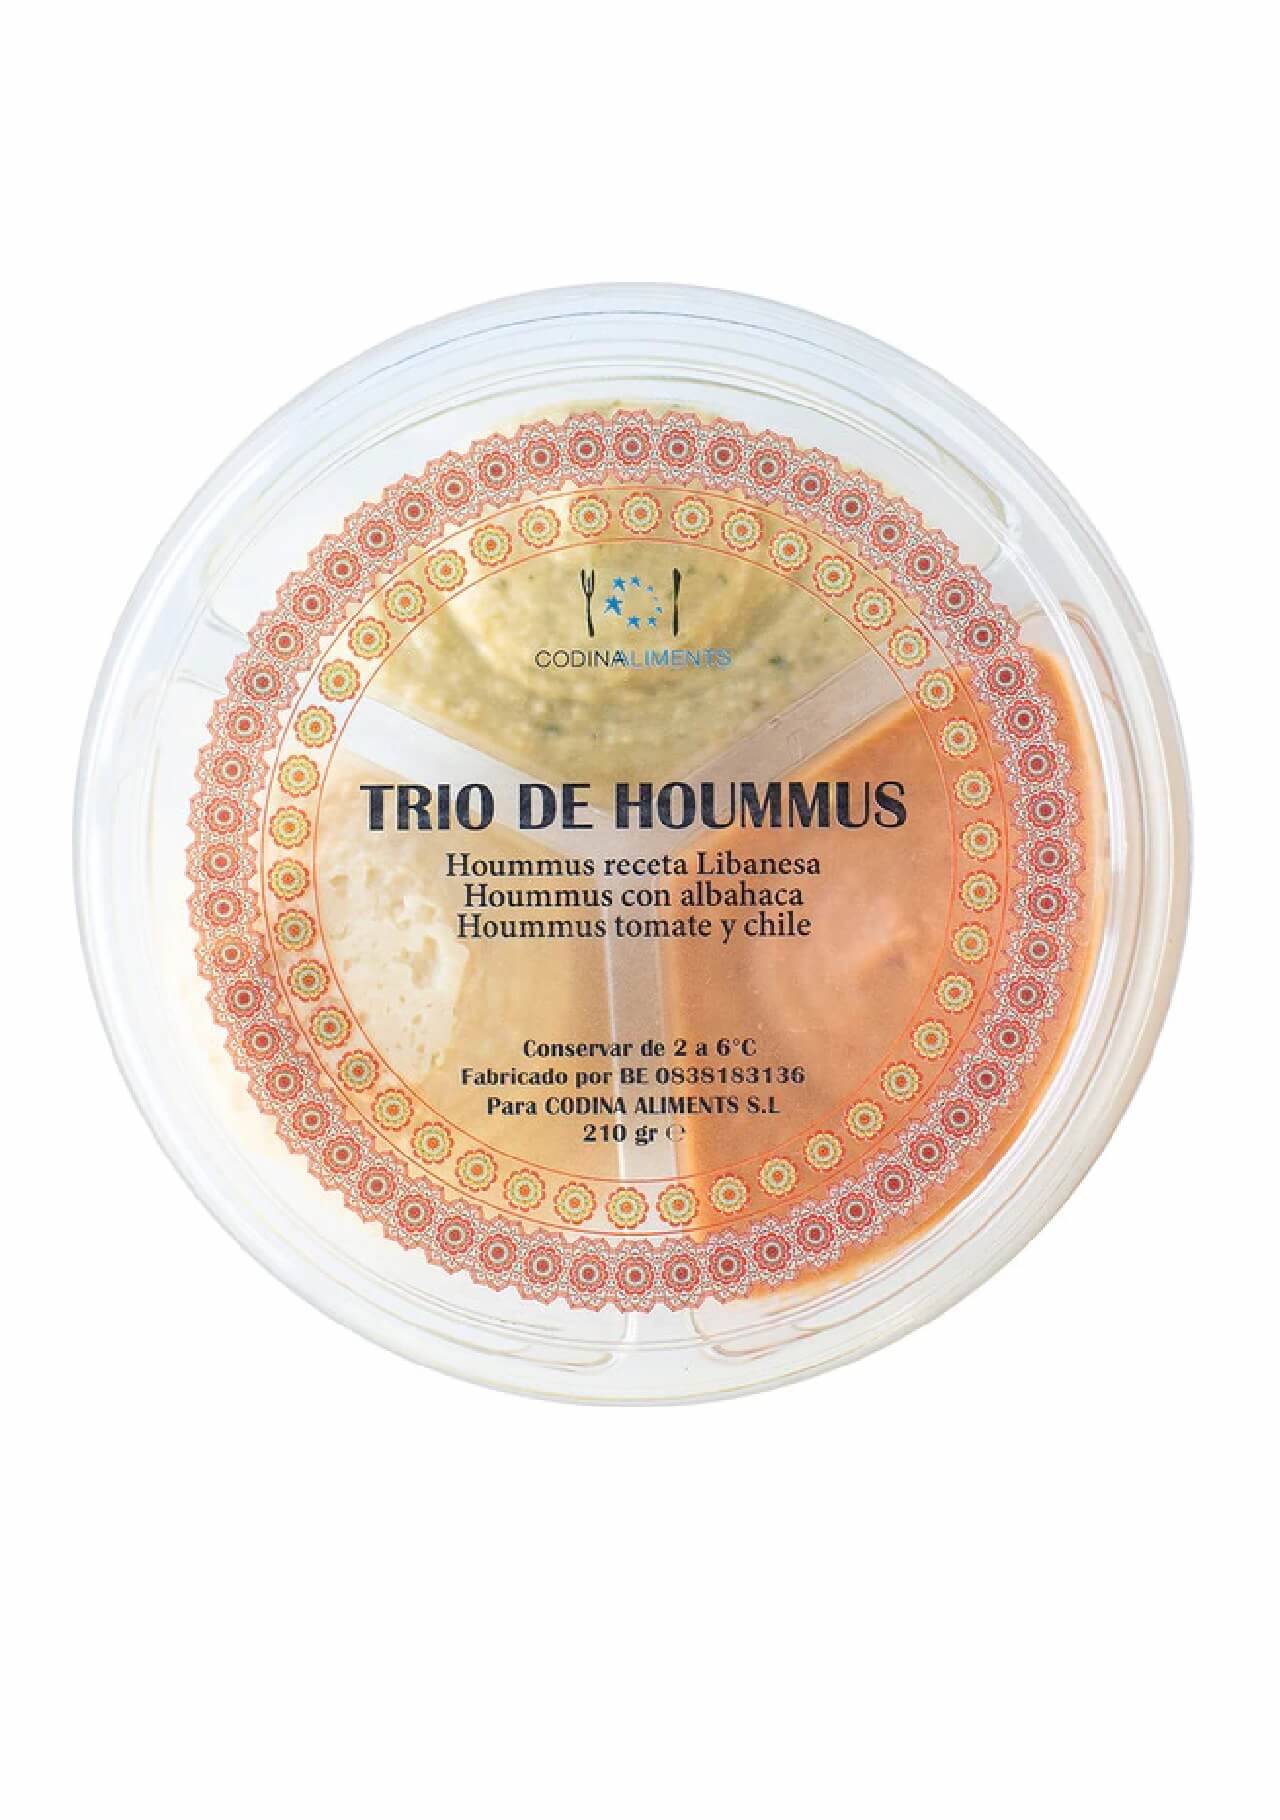 Hummus mercado trío de hummus El Corte Inglés, 4,15€